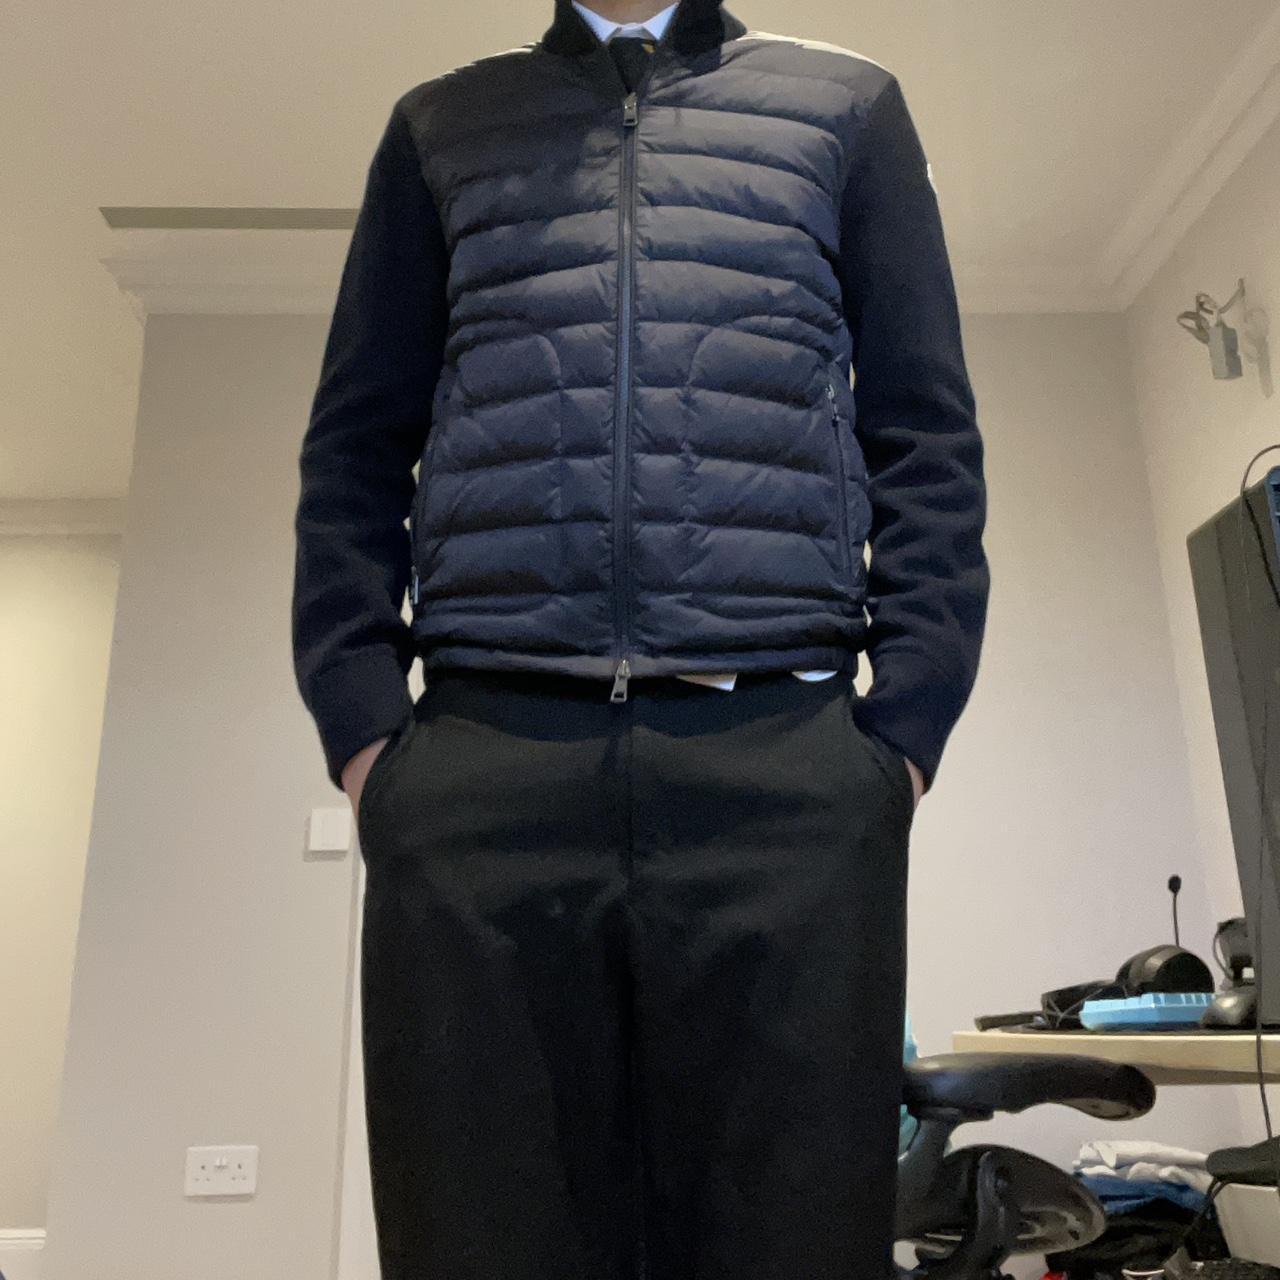 Moncler hybrid jacket worn 2 or 3 times - Depop